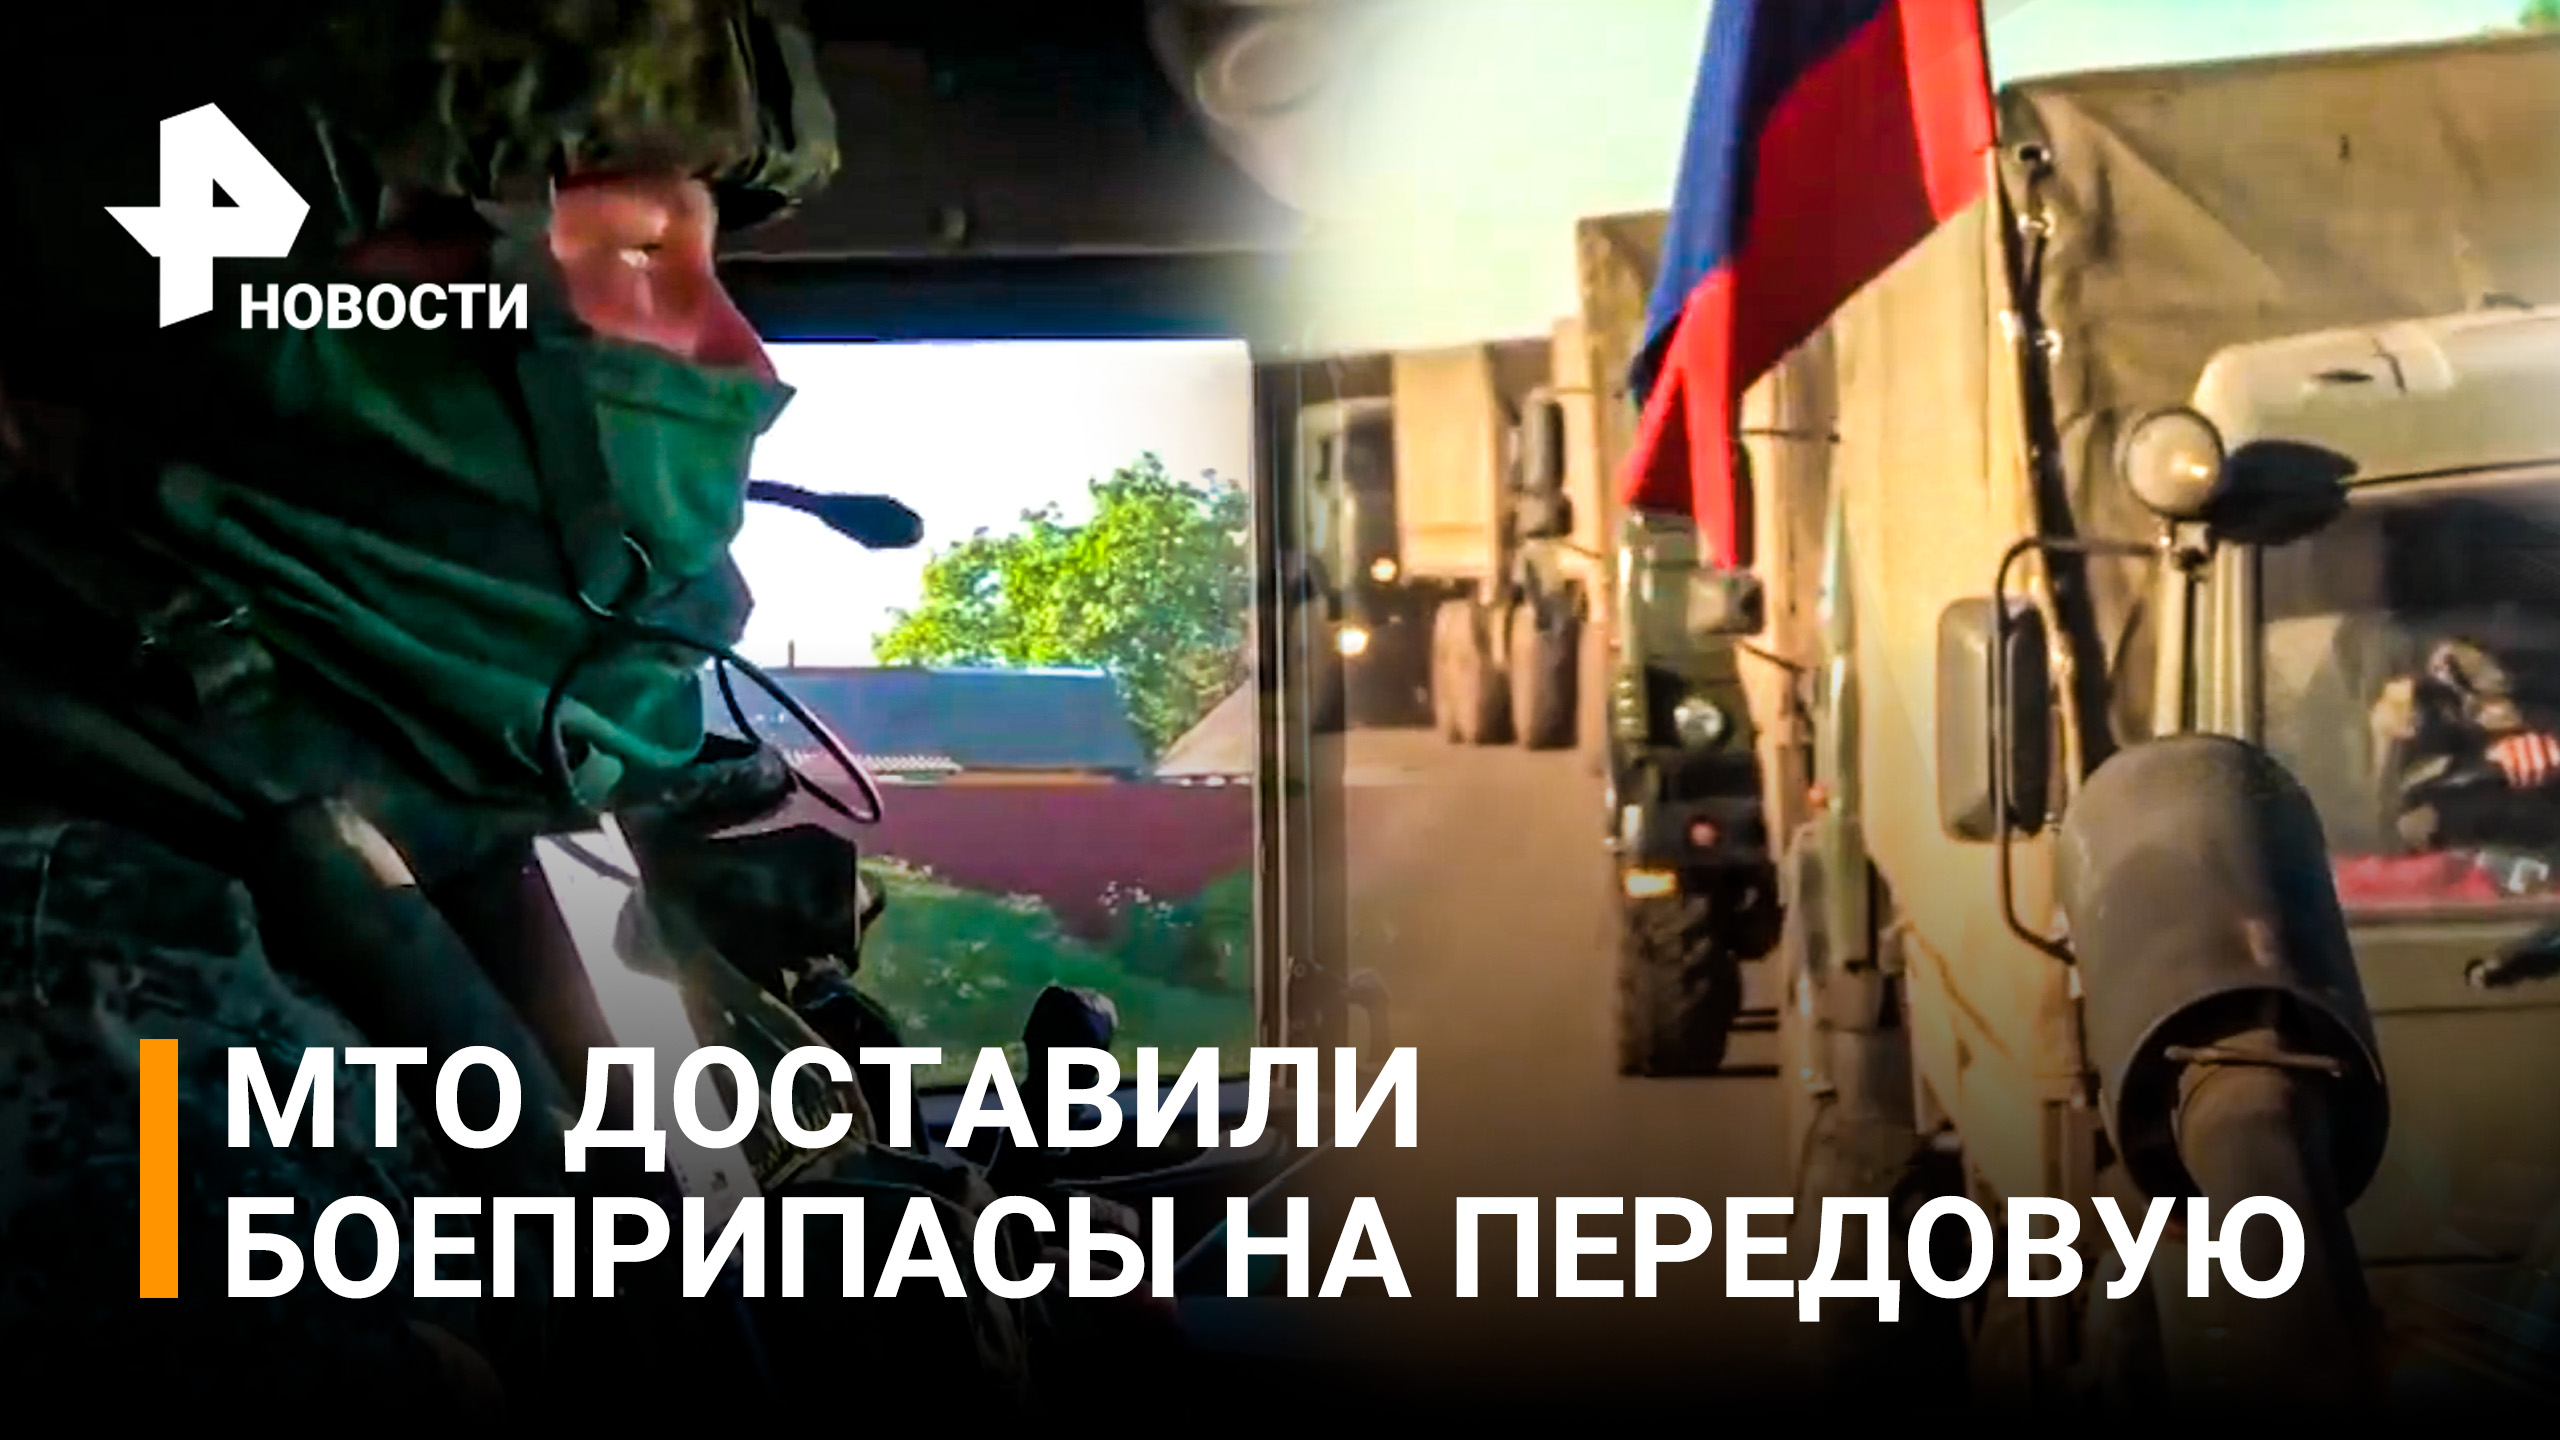 Марш на передовую: подразделения МТО доставили боеприпасы и продукты / РЕН Новости